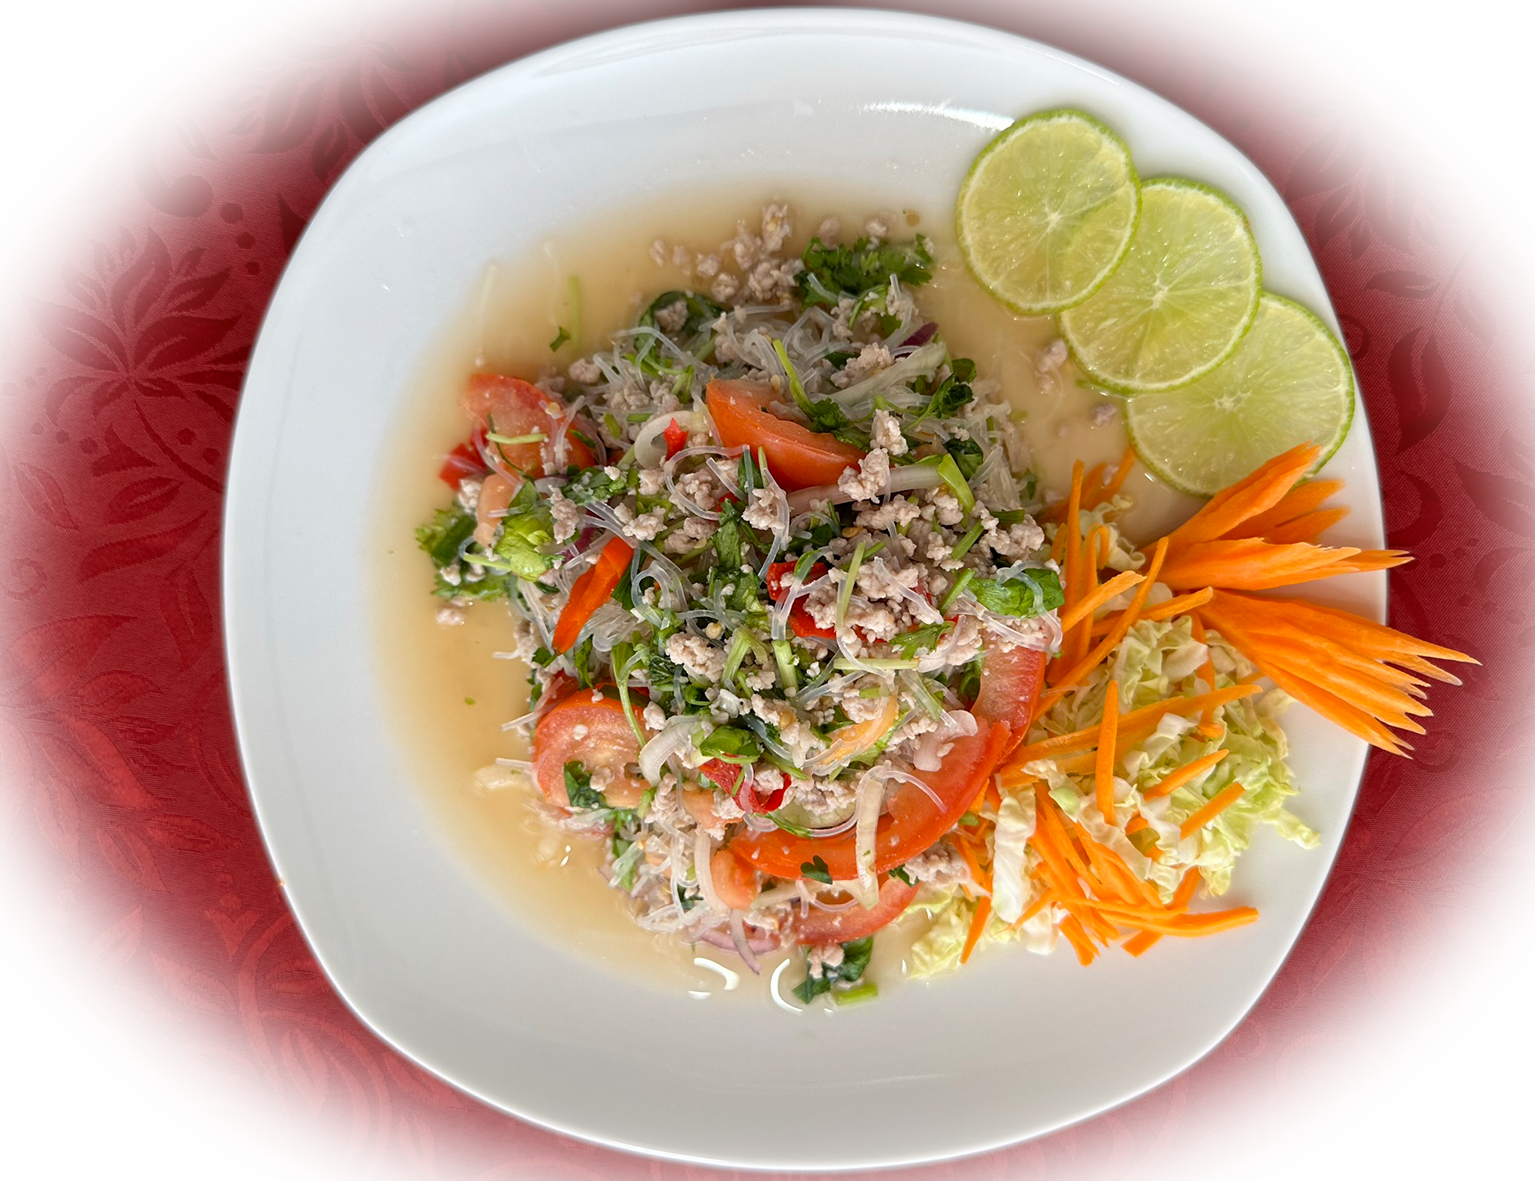 Yum Wun Sen ist ein leichter und erfrischender thailändischer Glasnudelsalat. Er kombiniert durchsic